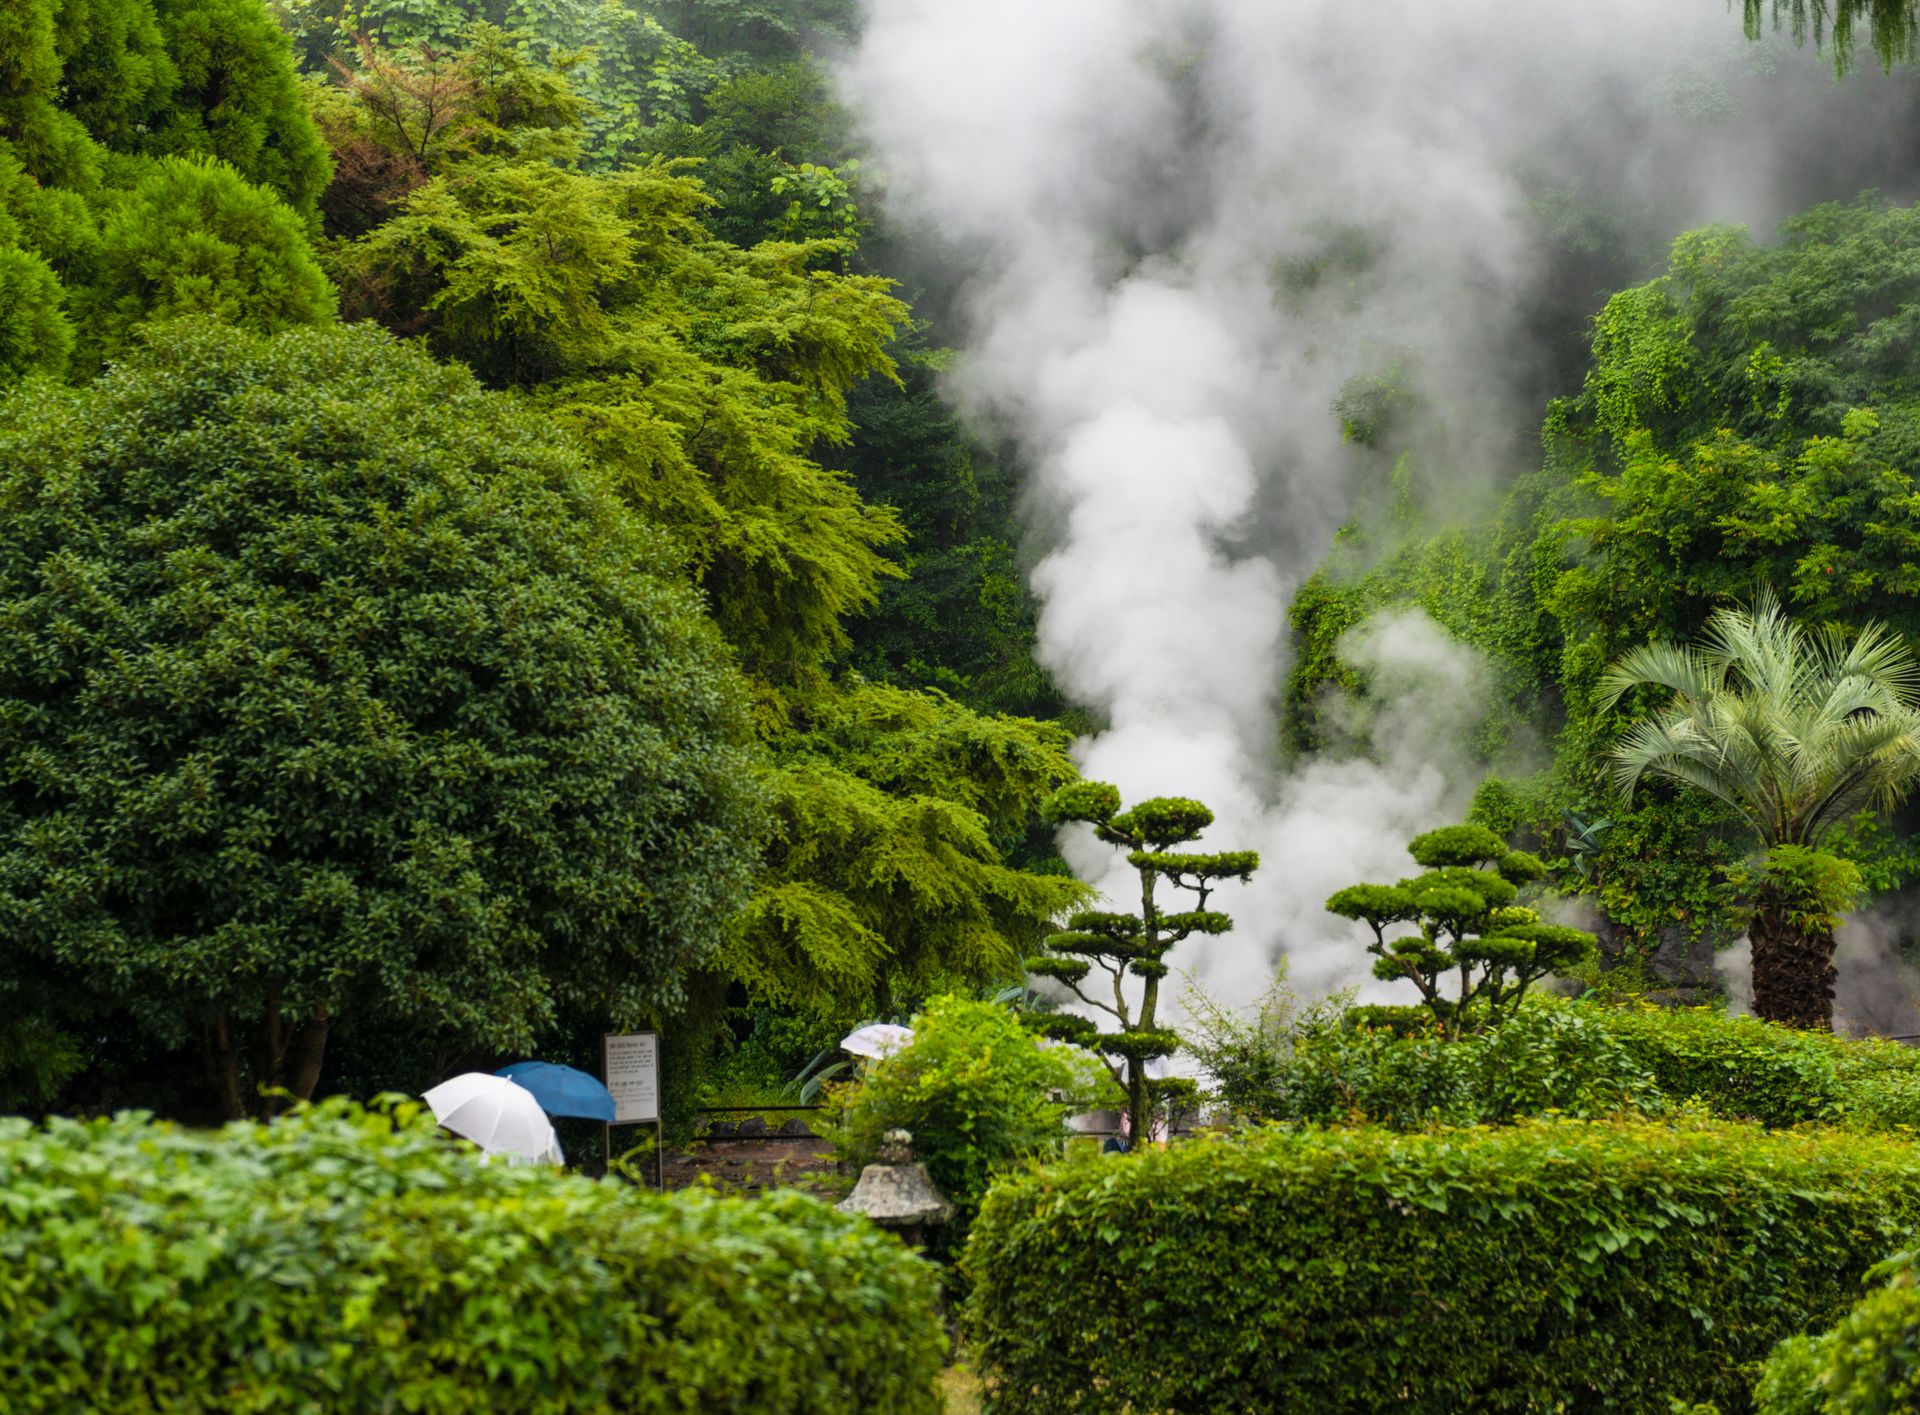 Les sources chaudes naturelles de Beppu - Japon ©iStock